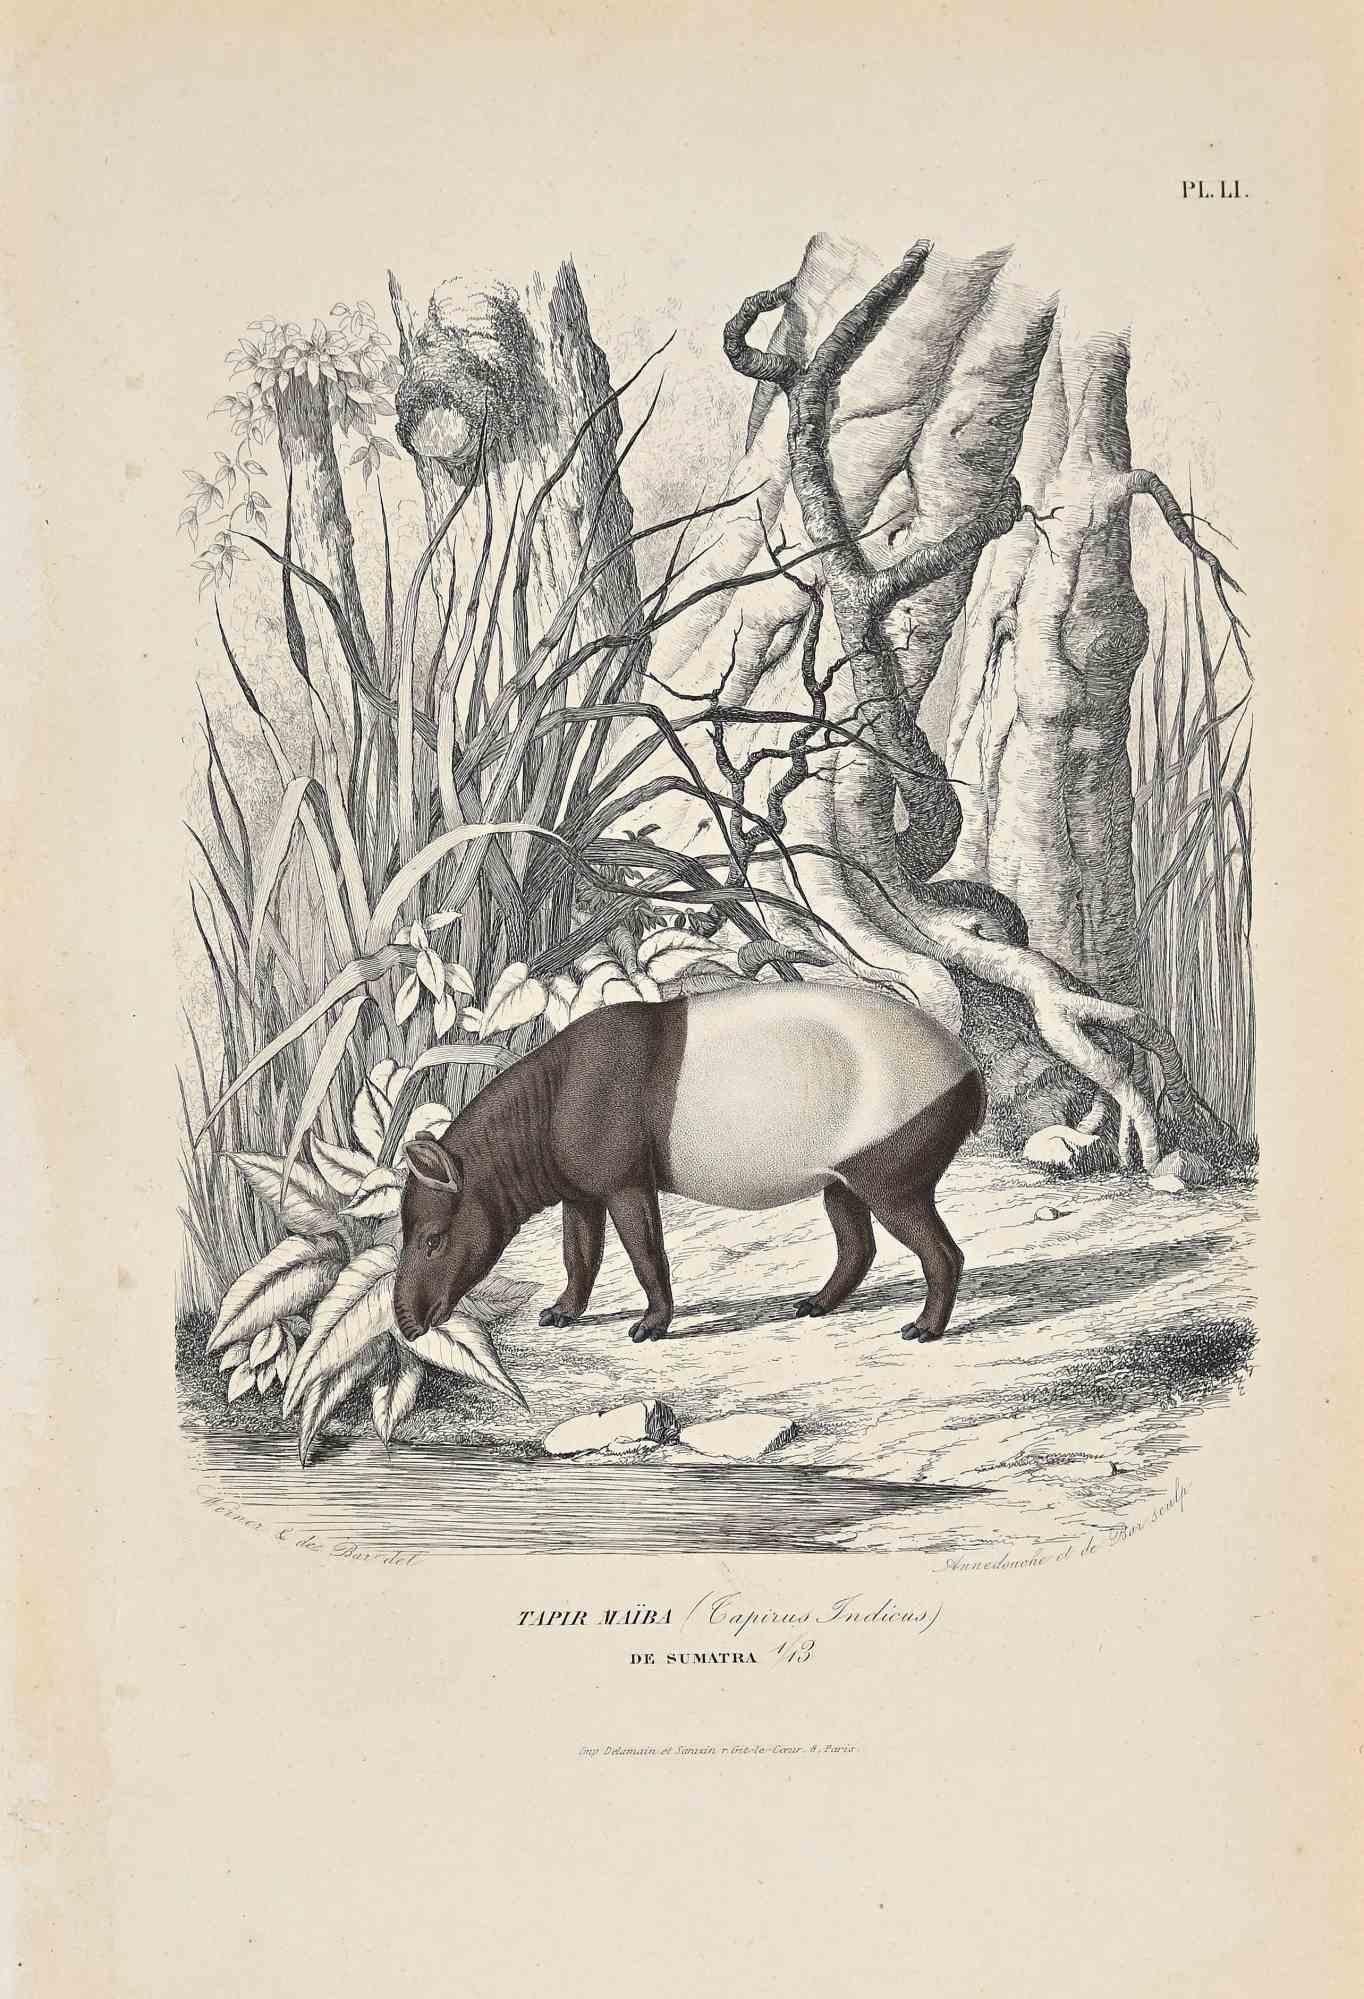 Tapir Maiba ist eine Originallithografie auf elfenbeinfarbenem Papier, die von Paul Gervais (1816-1879) geschaffen wurde. Das Kunstwerk stammt aus der Serie "Les Trois Règnes de la Nature" und wurde 1854 veröffentlicht.

Guter Zustand bis auf einige